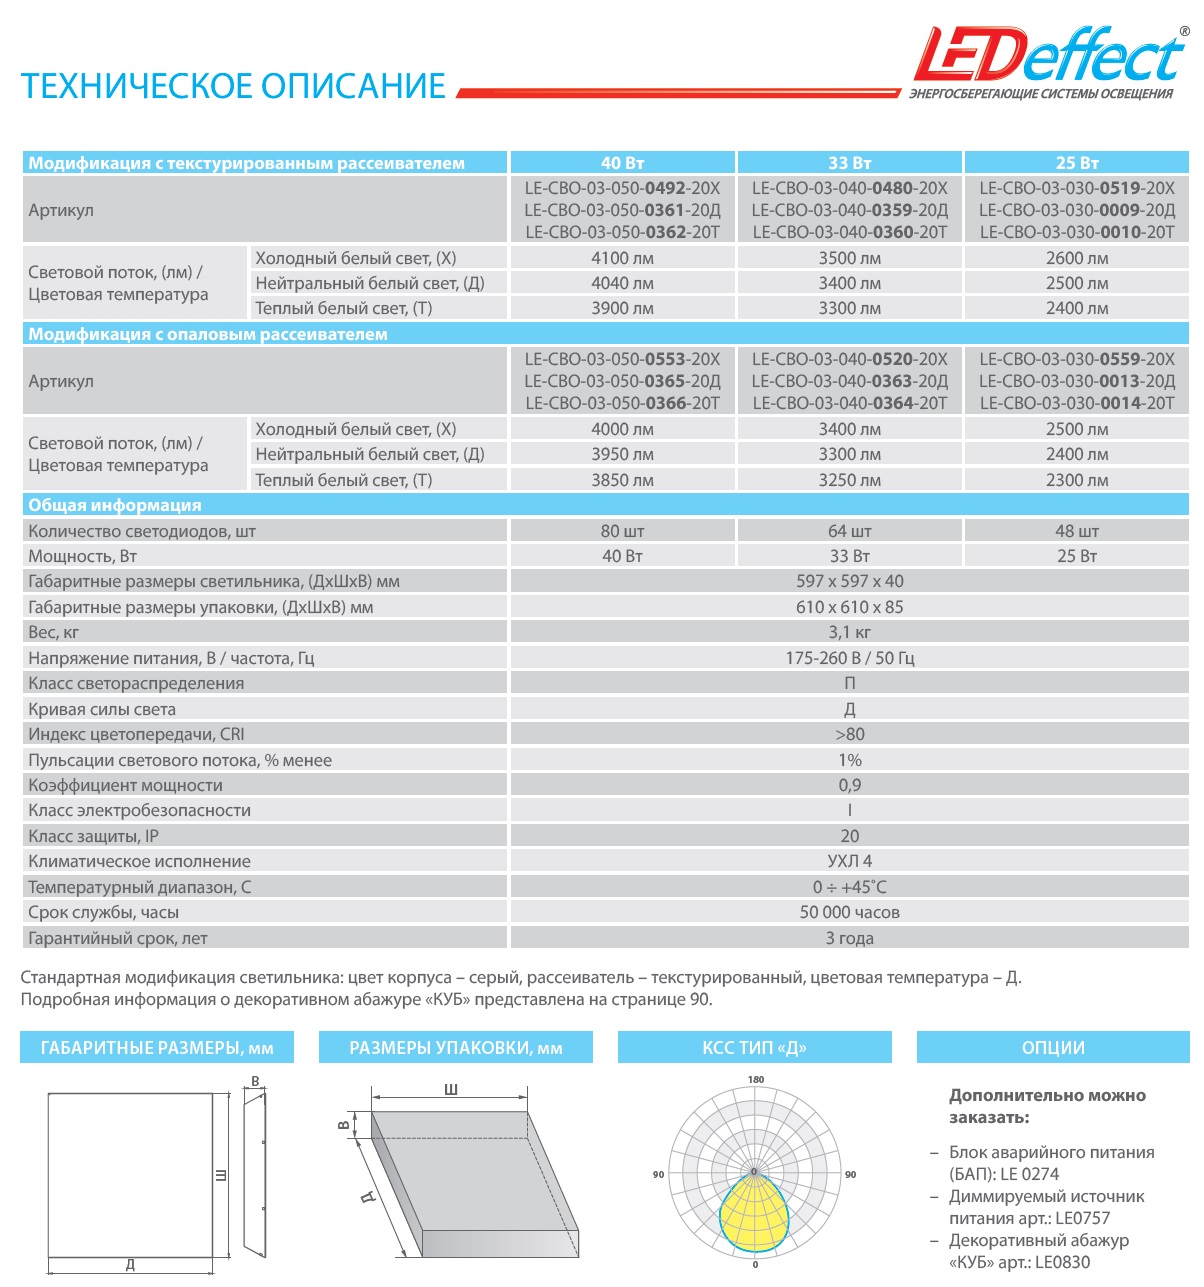 технические характеристики панели офис СВО Лед-эффект LEDeffect